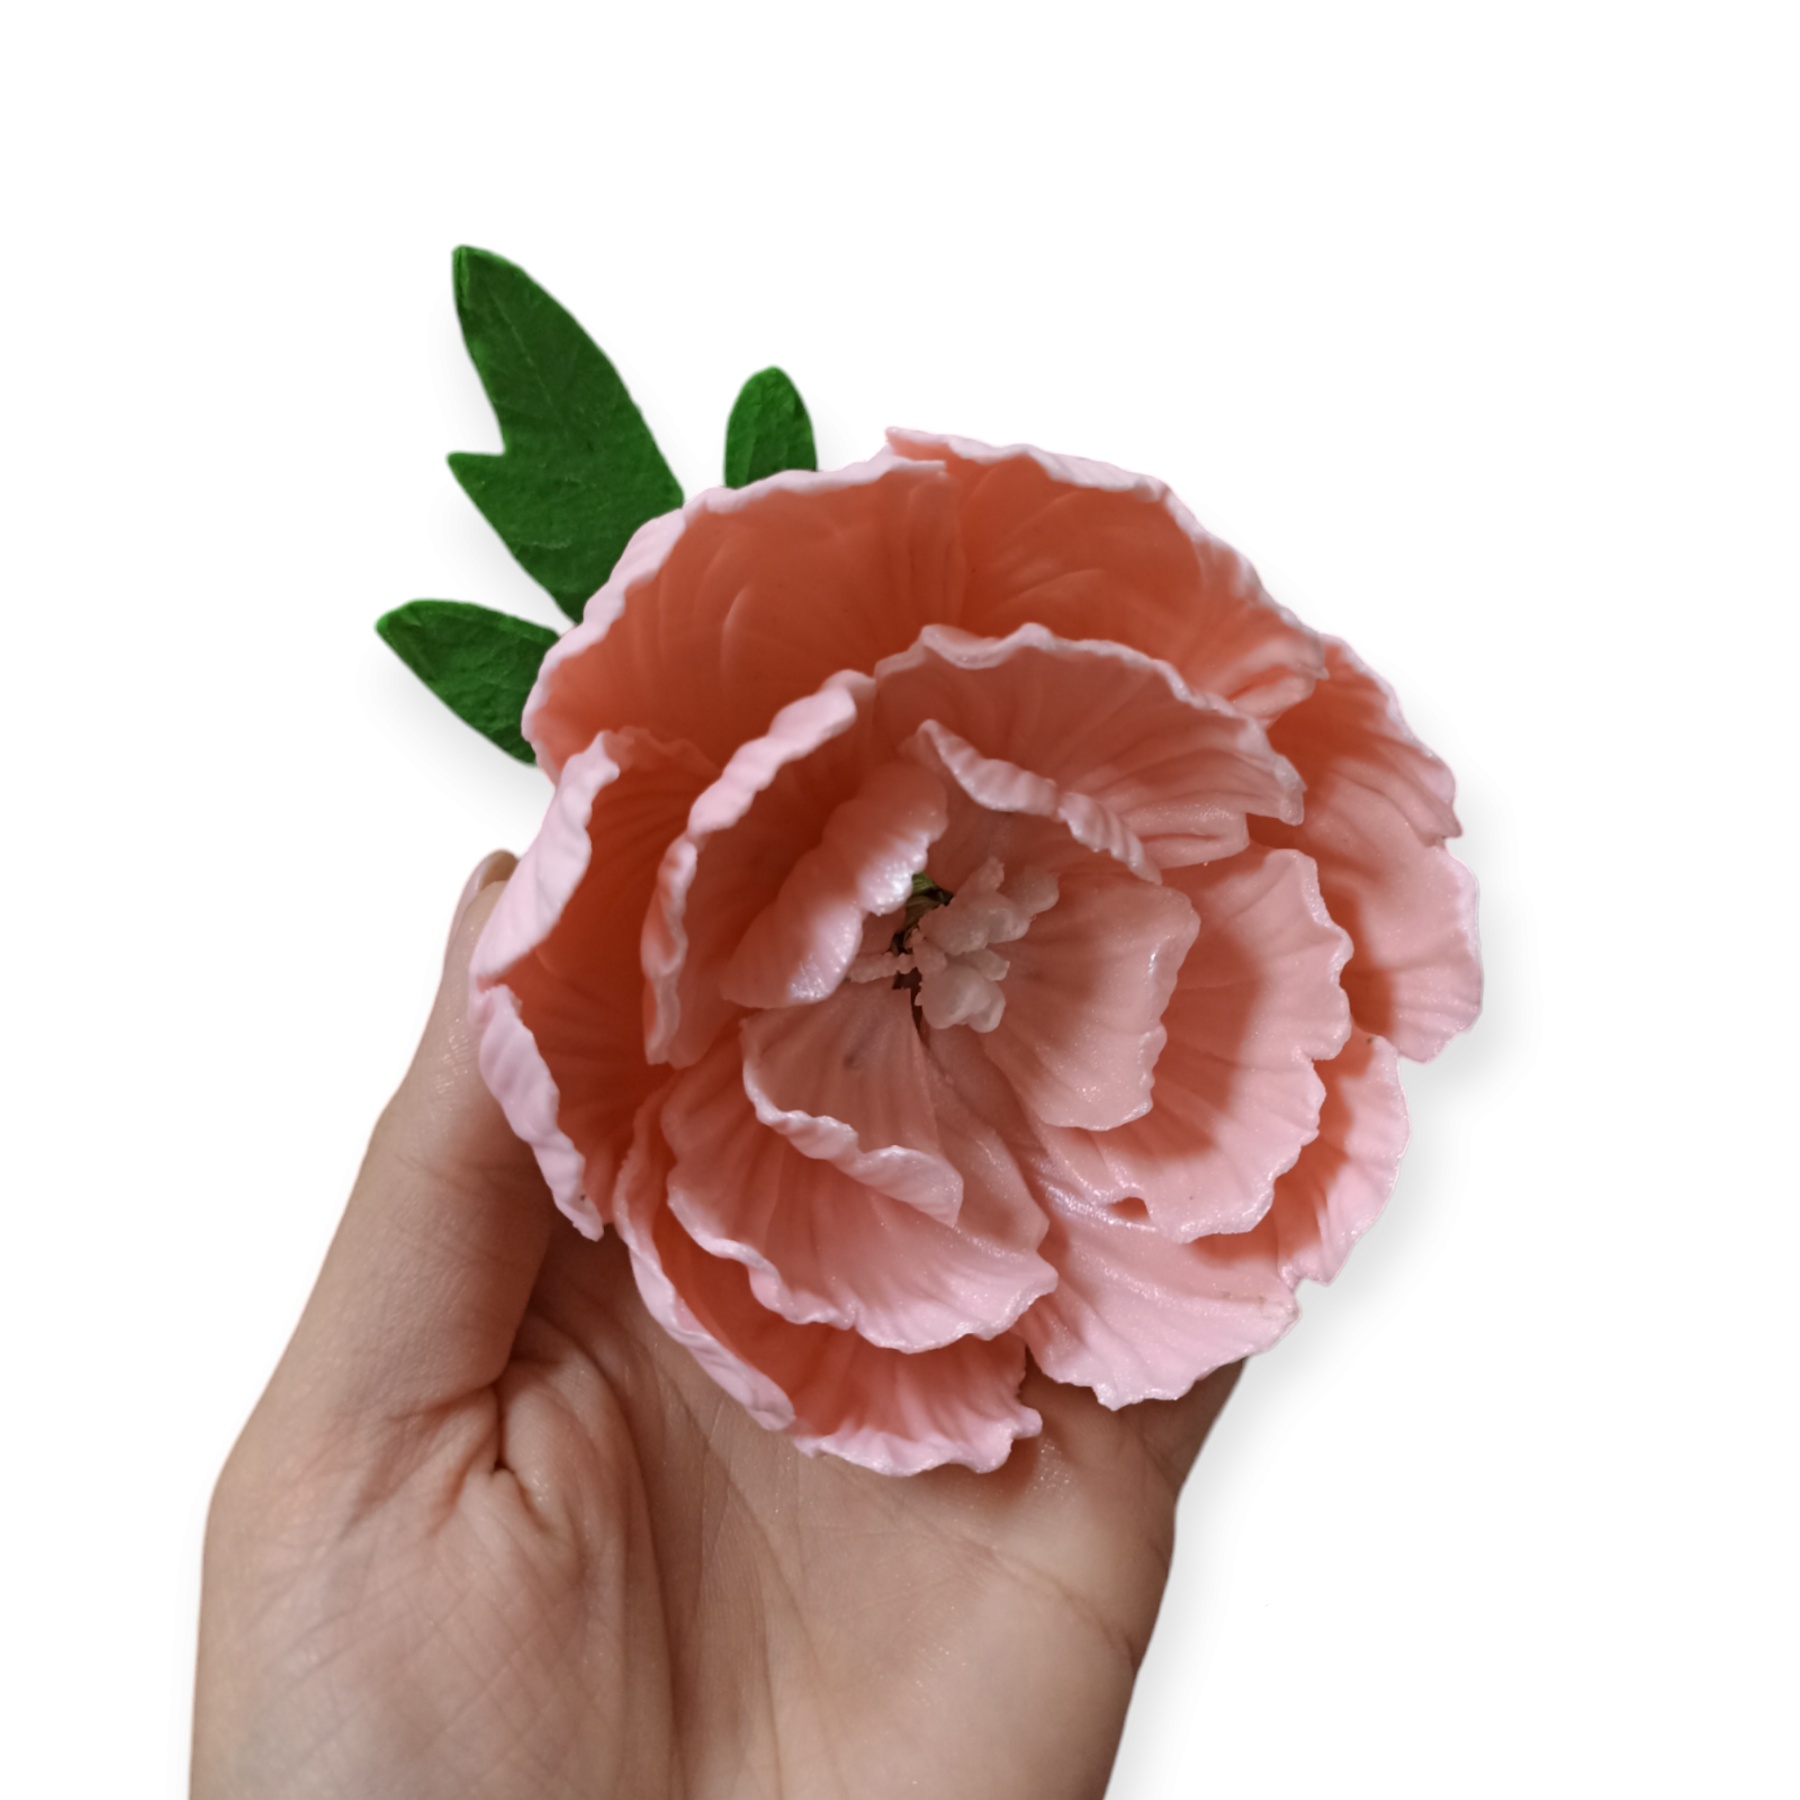 Božur cvet - Svetlo roze / Slanje na odgovornost kupca!